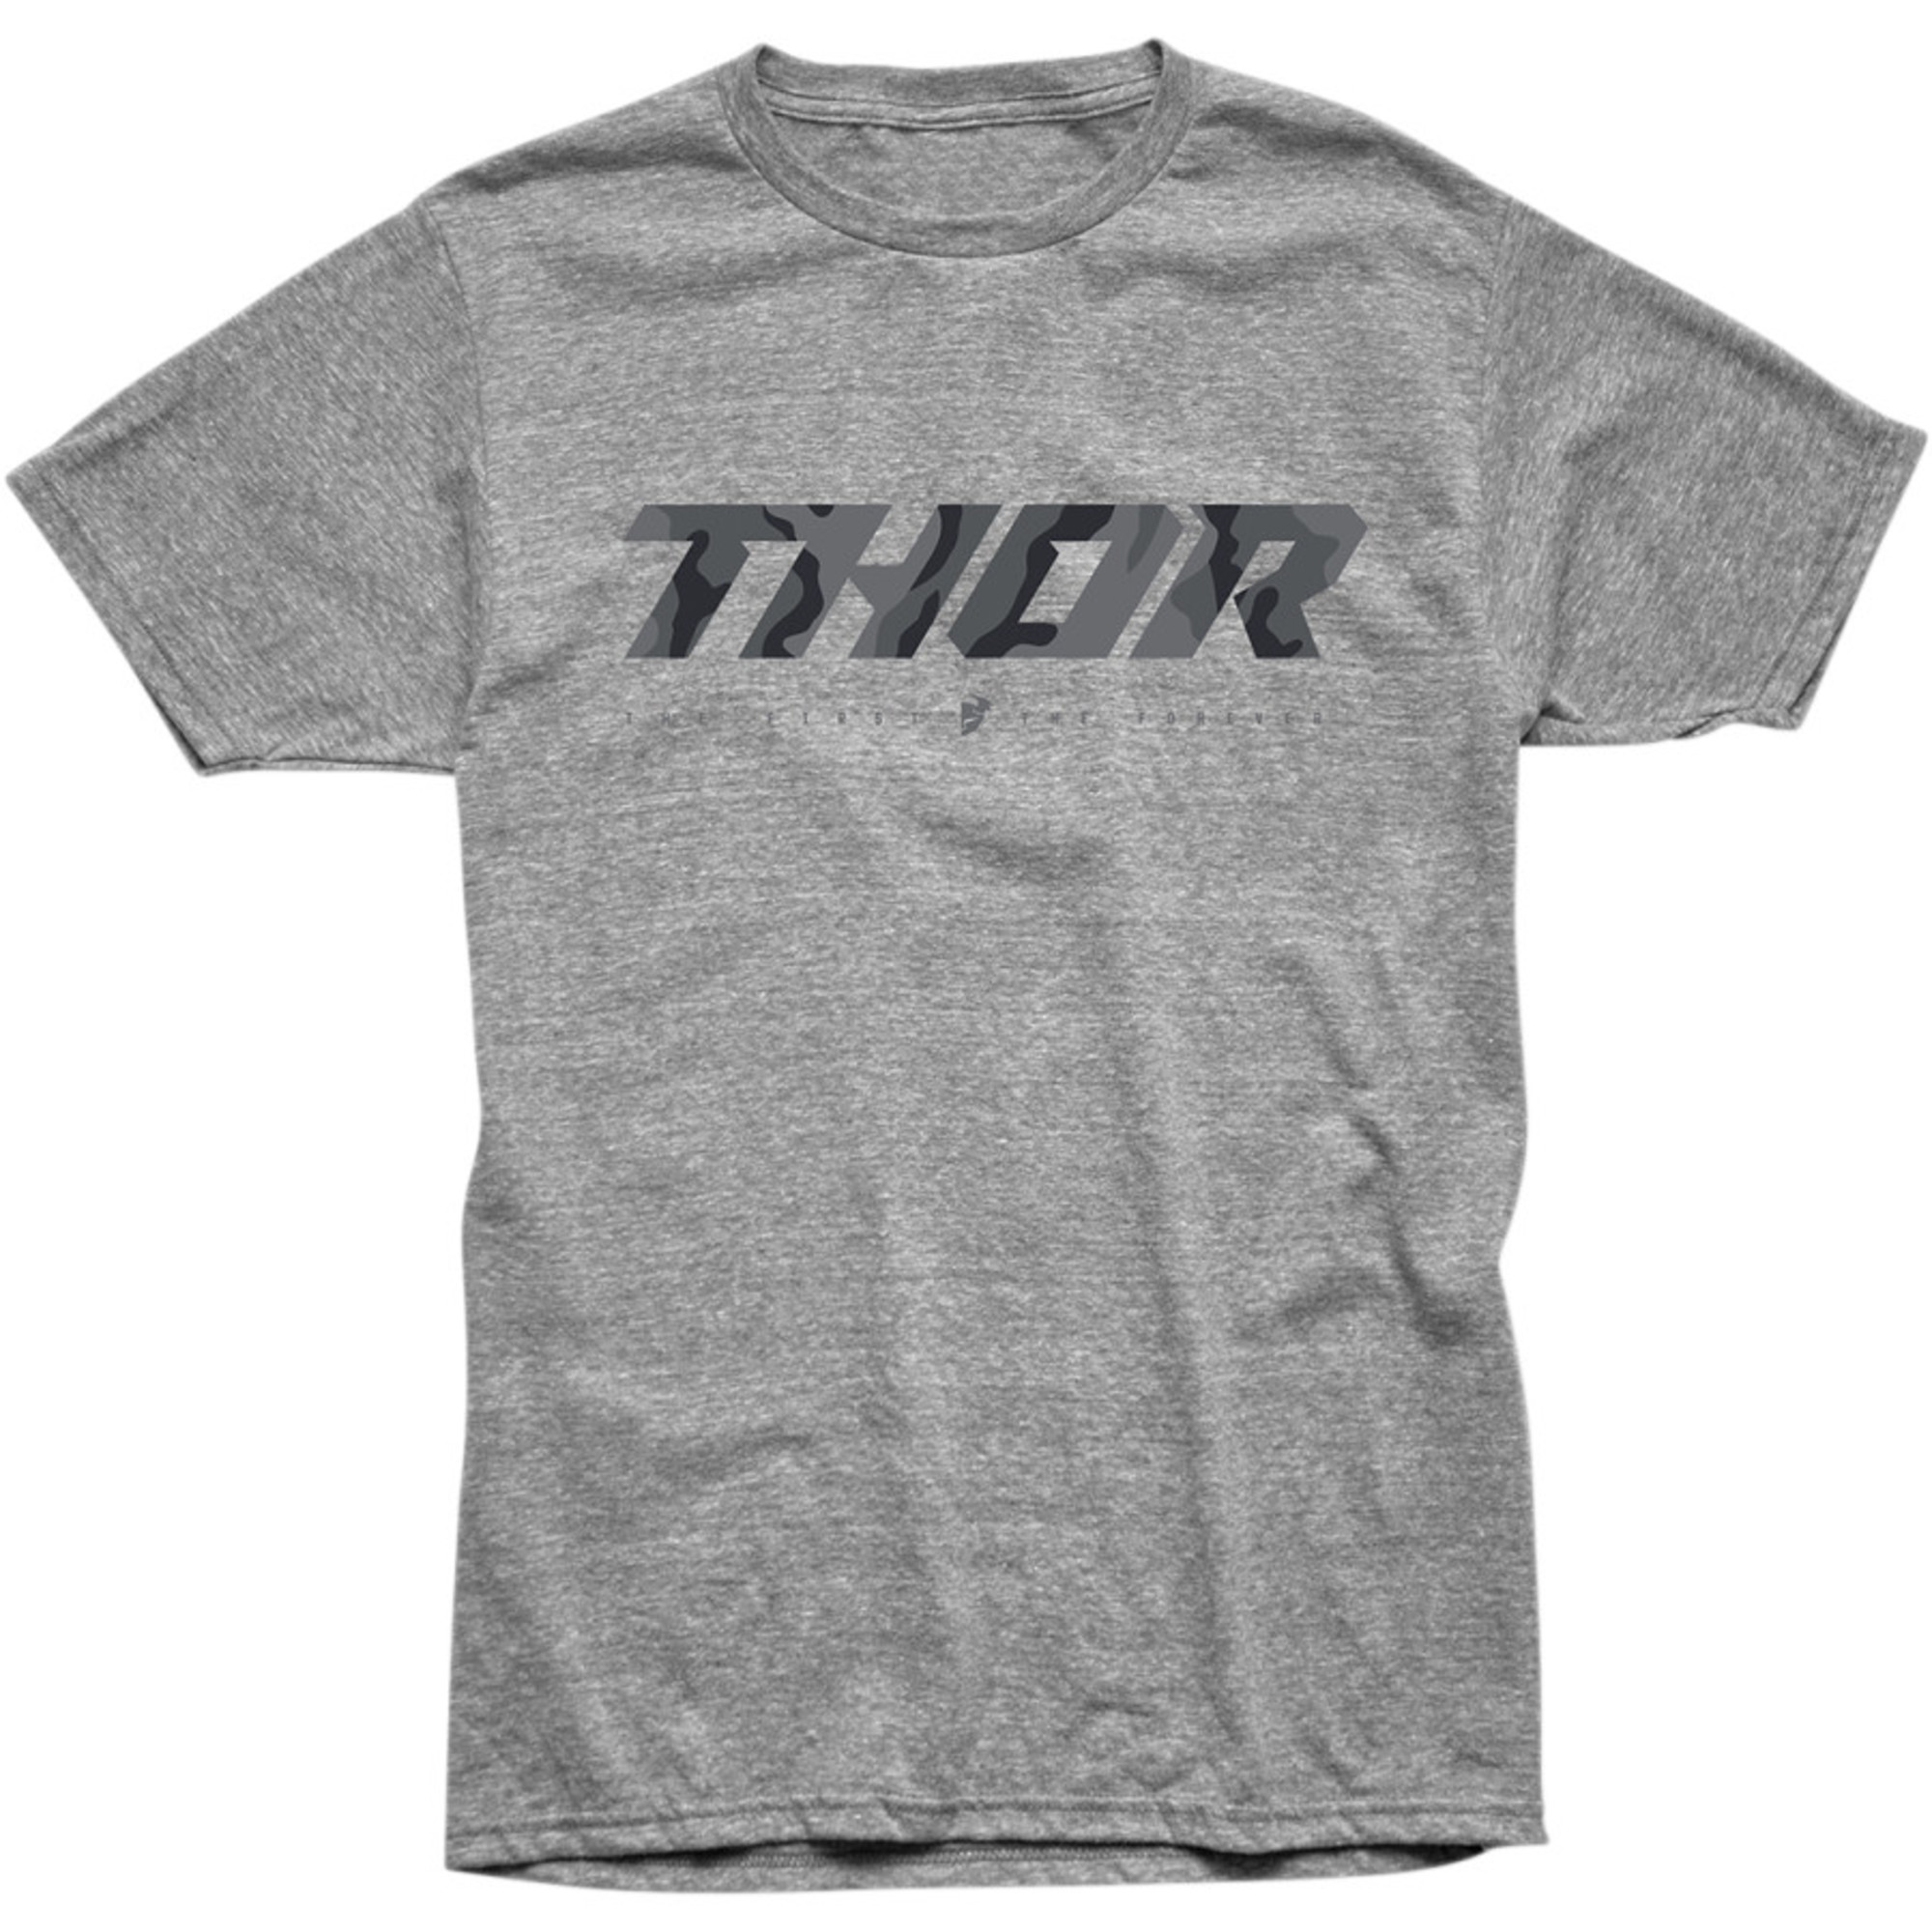 thor t-shirt shirts for men loud 2